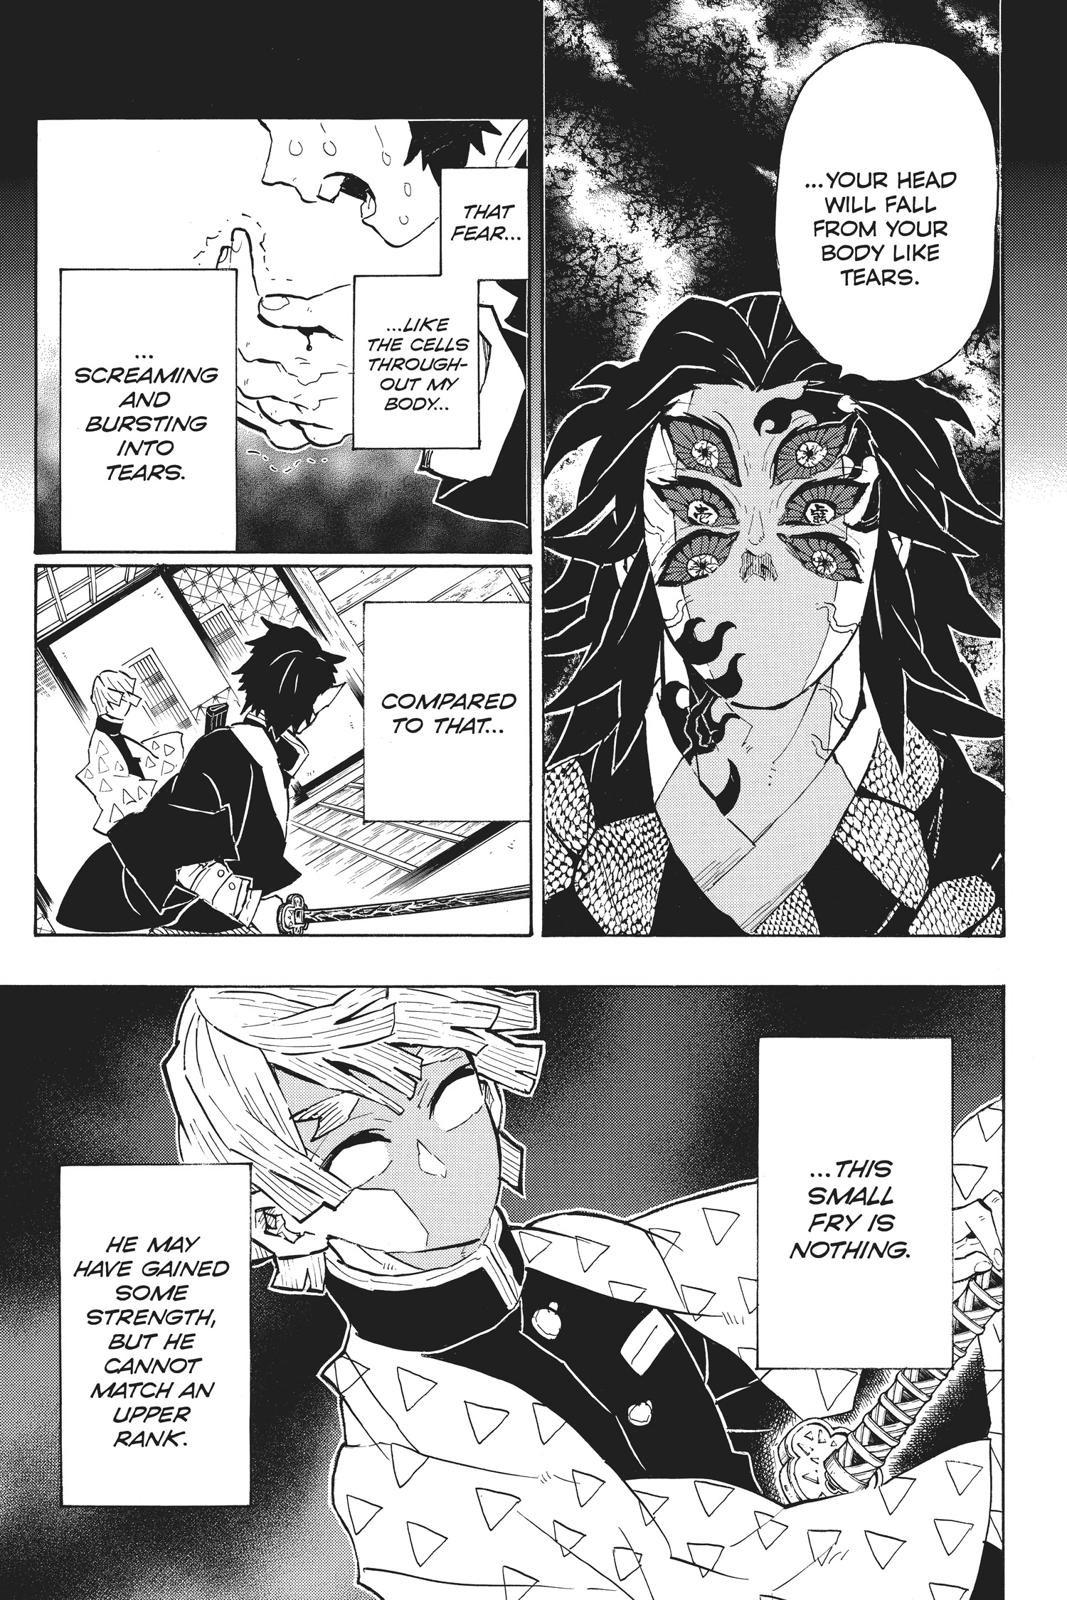 Demon Slayer Manga Manga Chapter - 145 - image 4